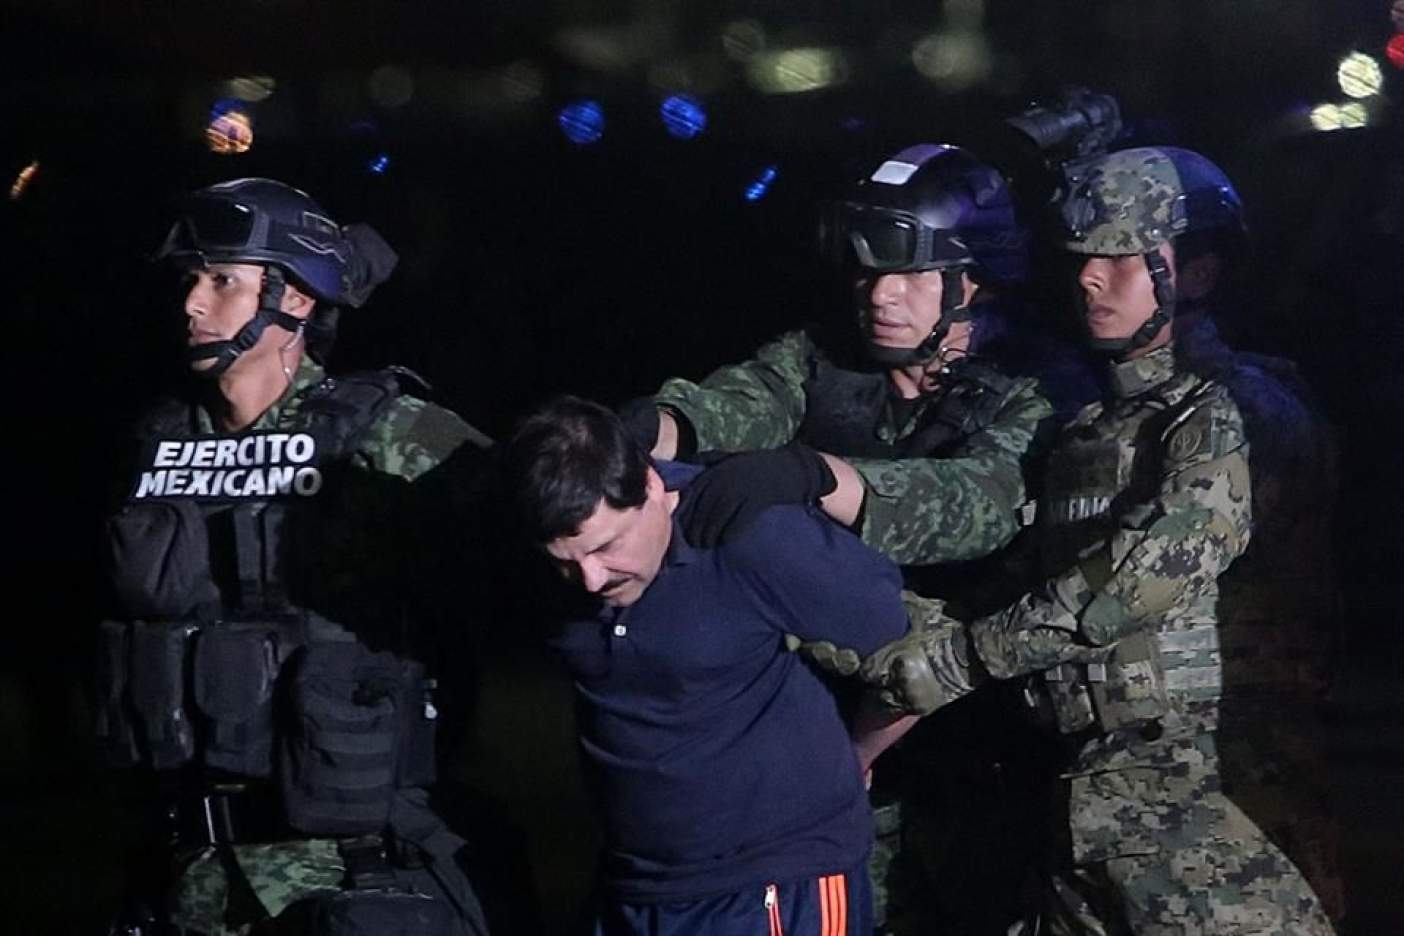 La recaptura de “El Chapo” no es exactamente una "misión cumplida"